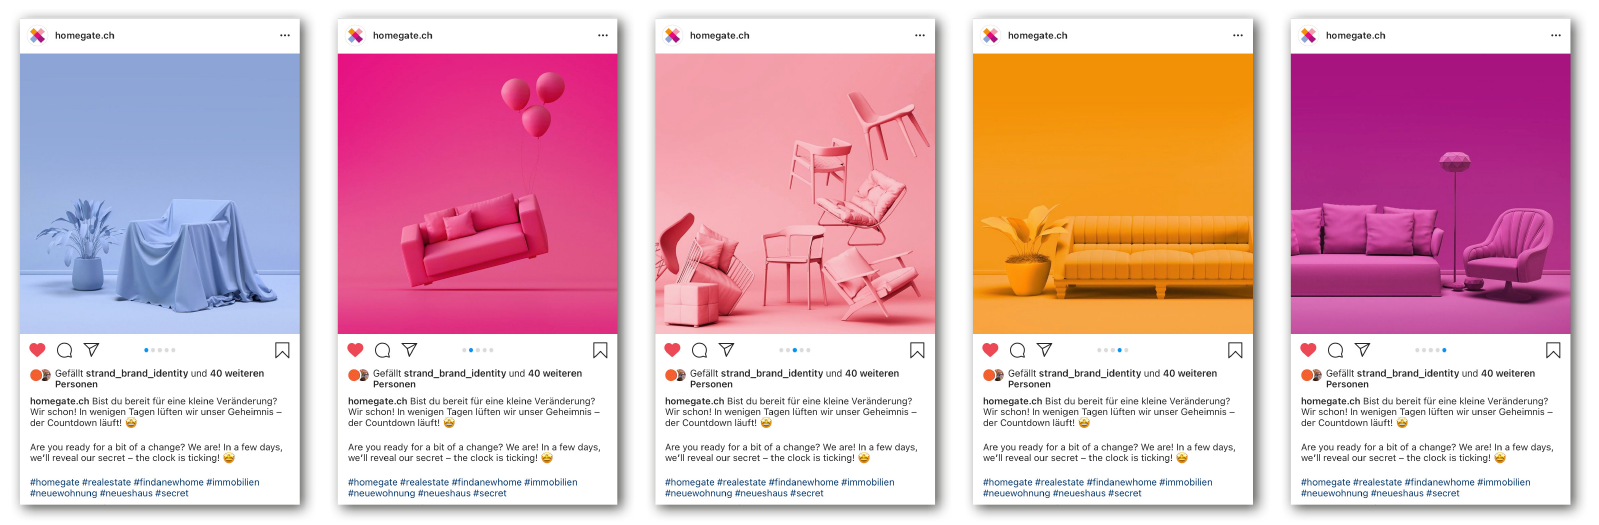 susannihlenfeld-homegate-redesign-socialmedia-branding-instagram